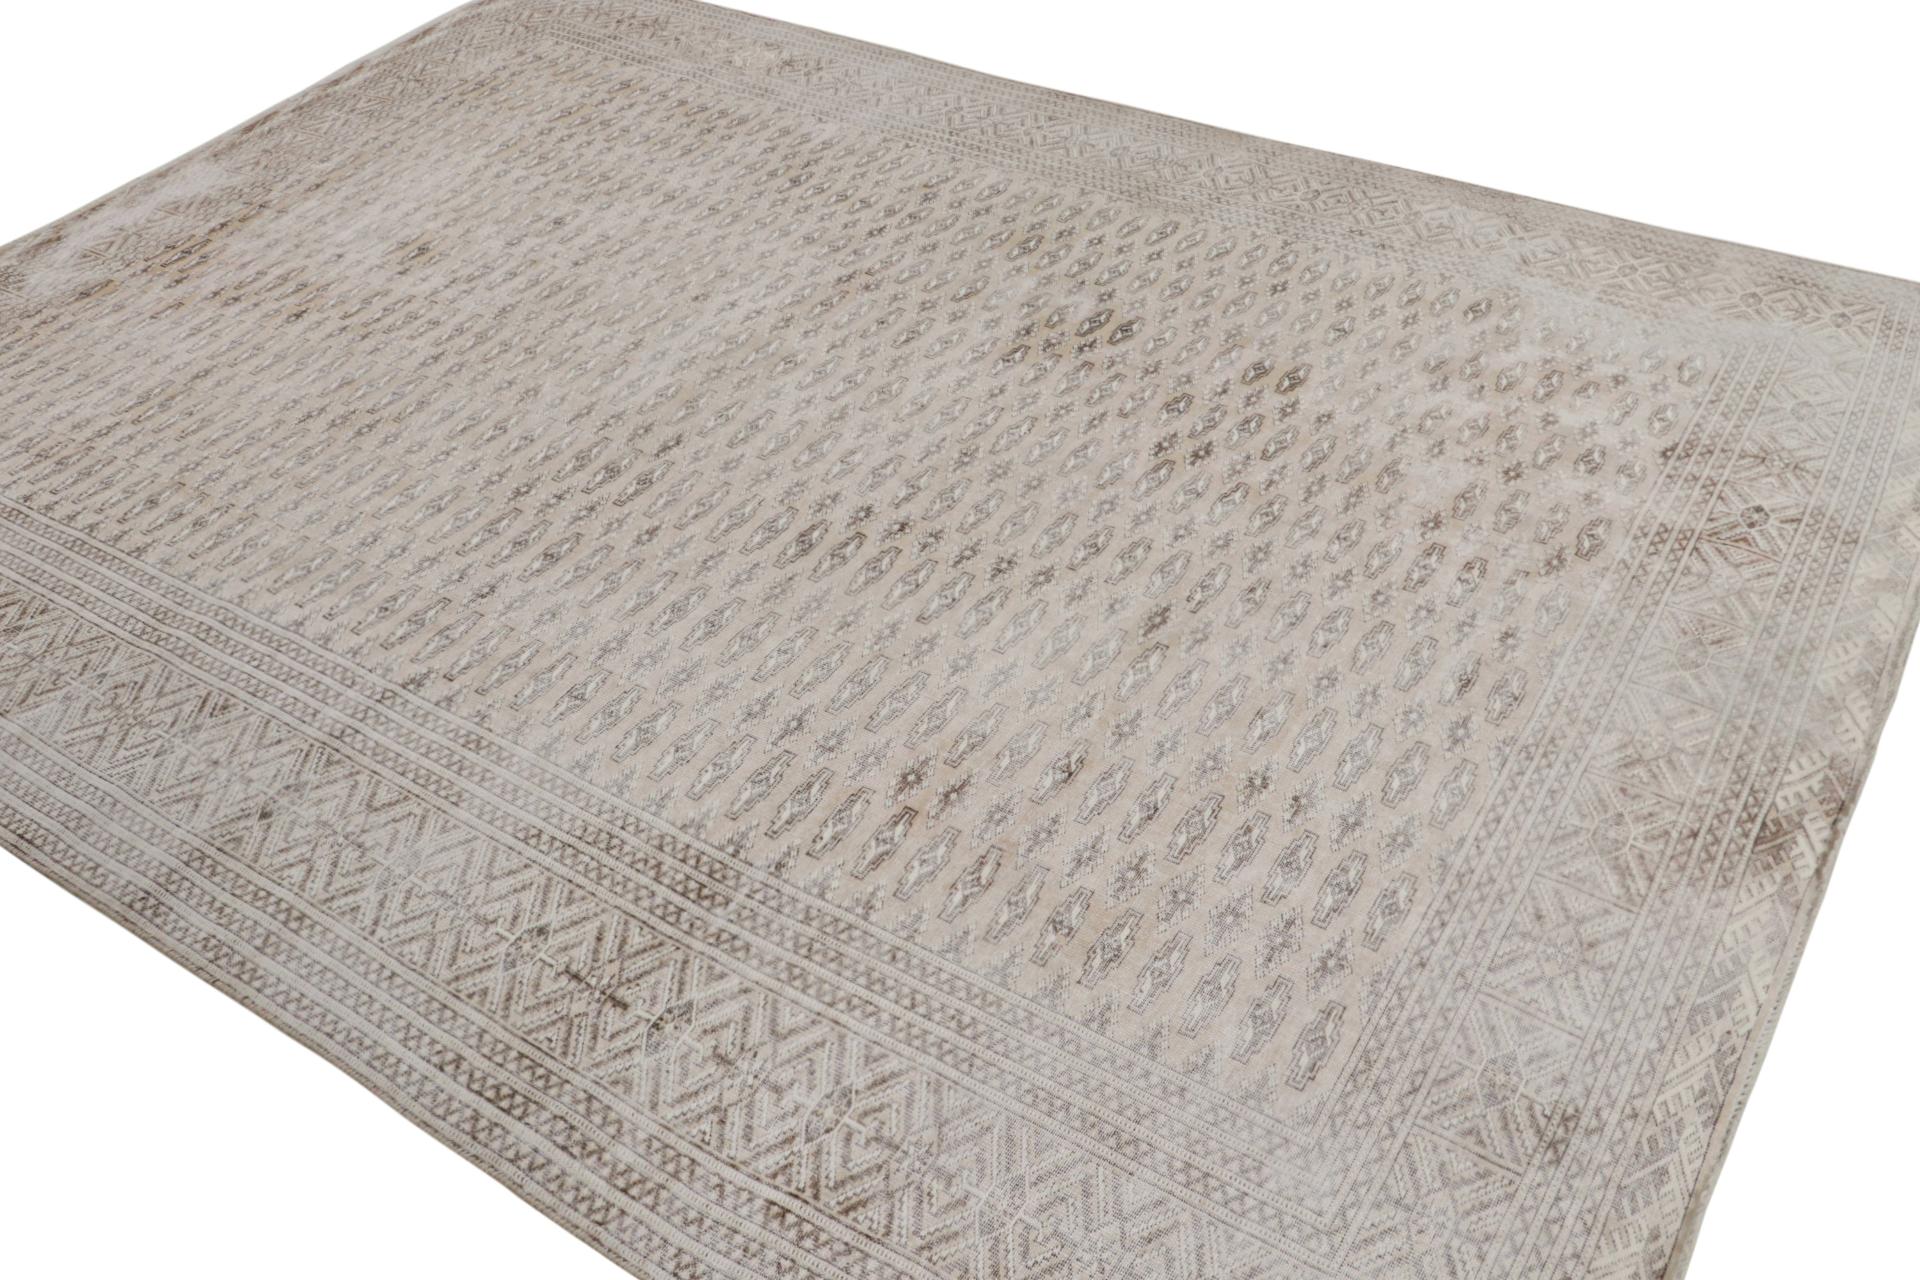 Noué à la main en laine vers 1970-1980, un tapis persan Kerman vintage 9×12  des dernières curations classiques de Rug & Kilim.

Sur le Design :

La pièce présente un lavage antique avec des couleurs subversives et vives pour un tapis de Kerman -